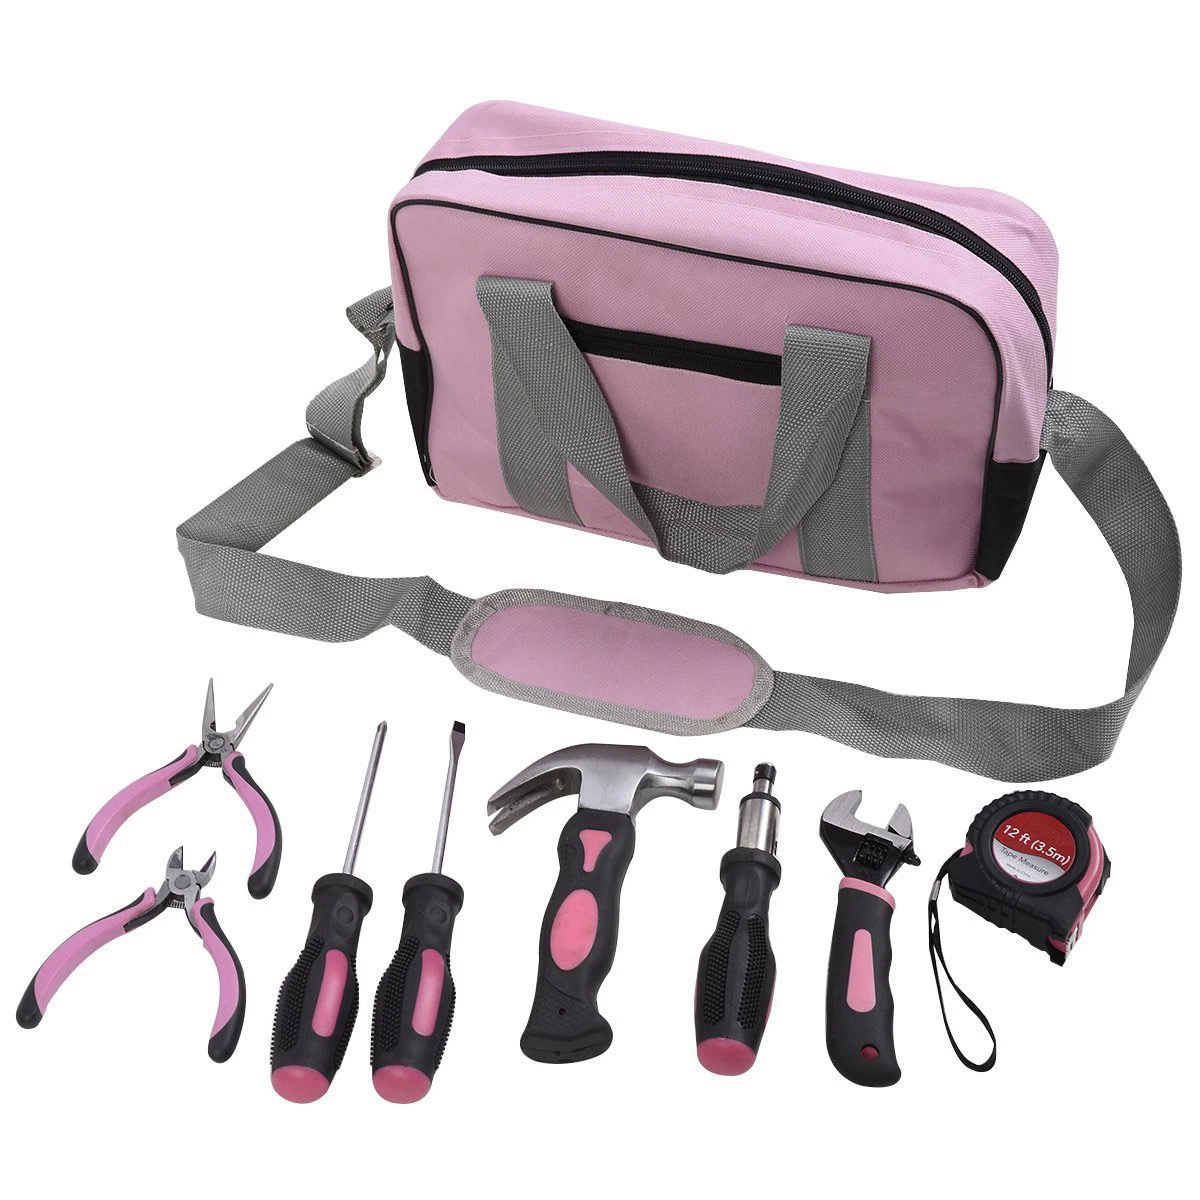 Bonito 11pcs Ladies' Home Kit de reparing Pink hardware Herramientas, juego de herramientas de mano